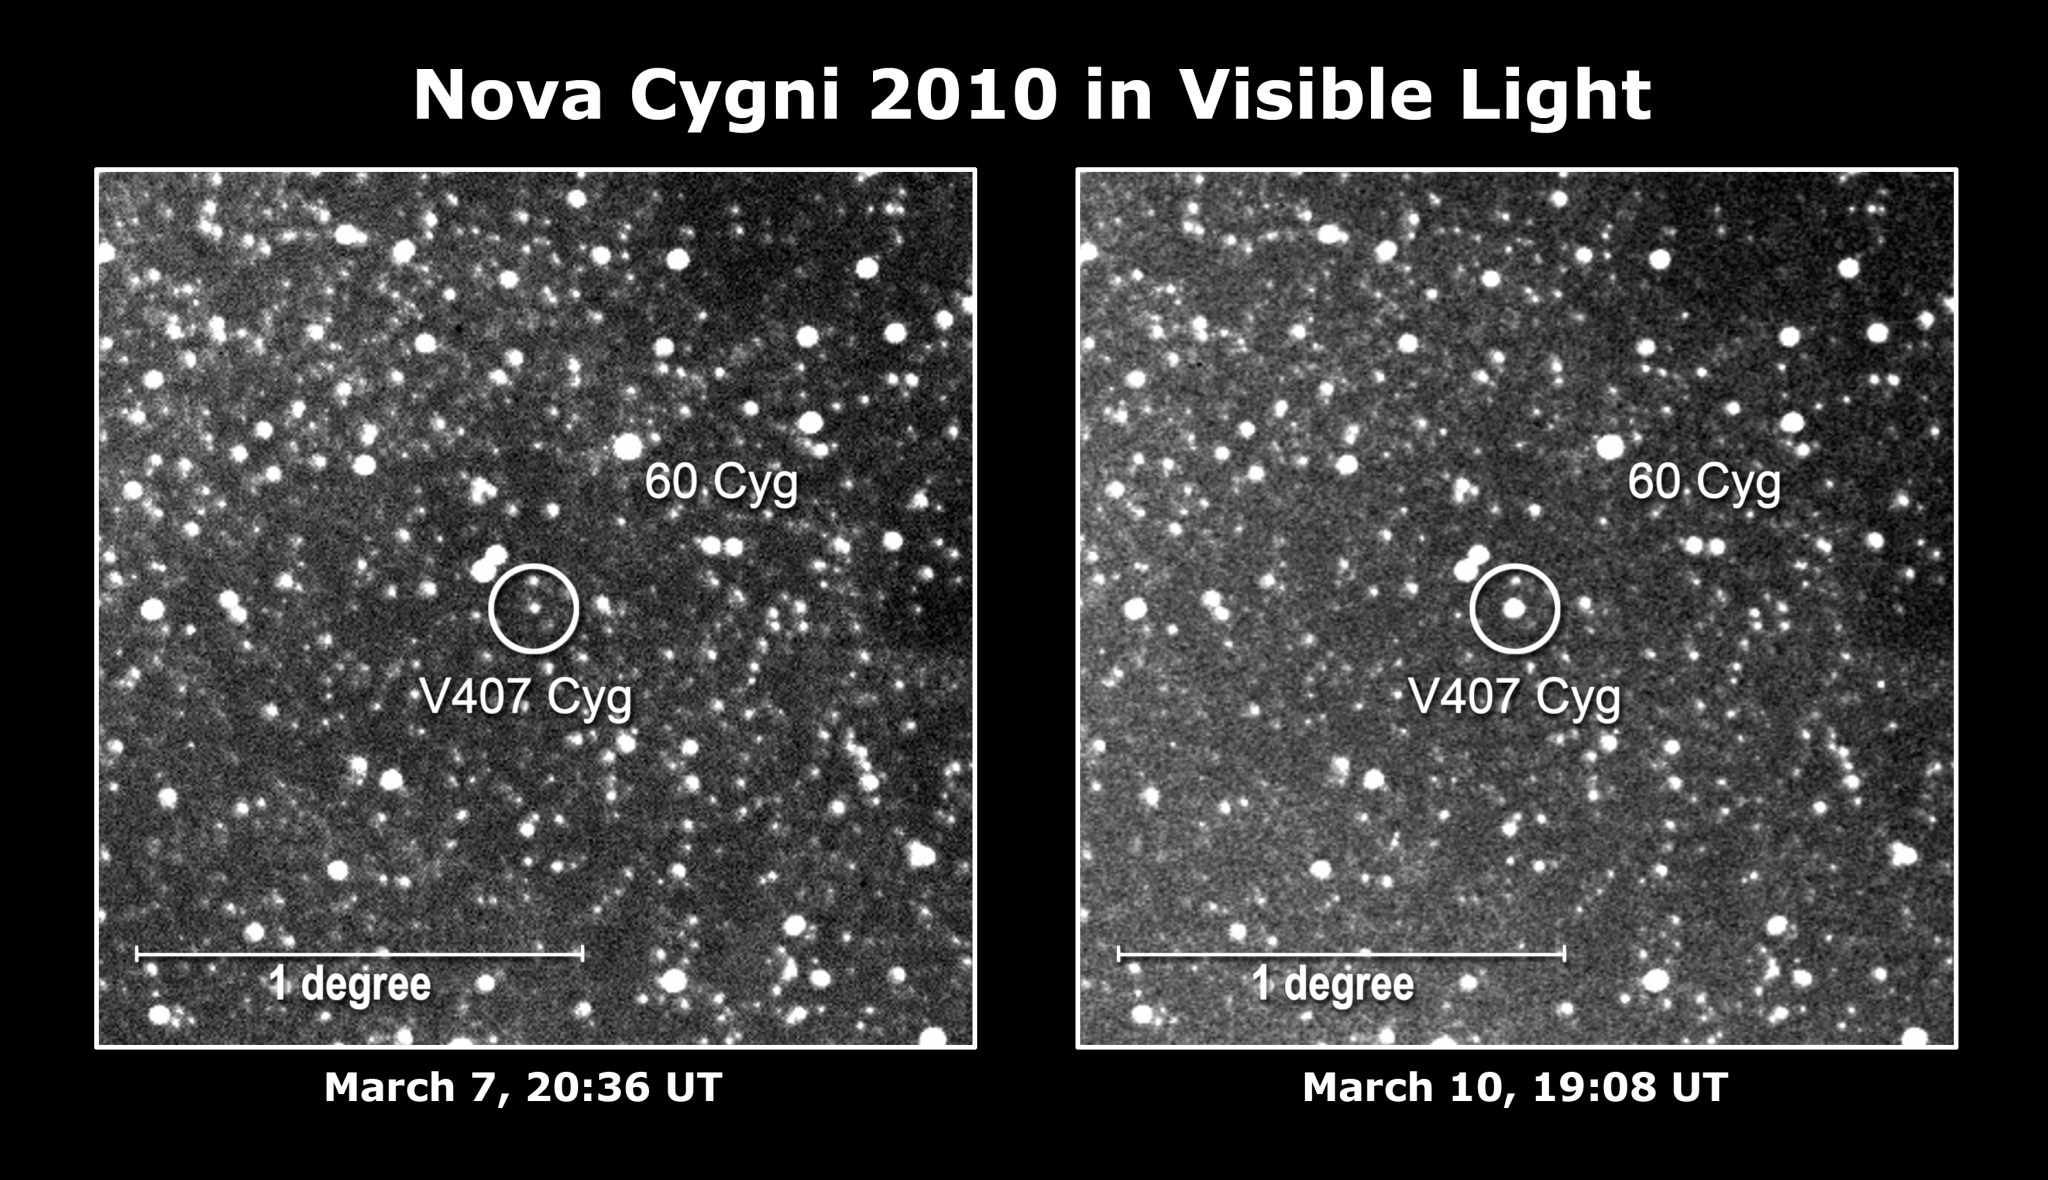 Nova Cygni 2010 observations